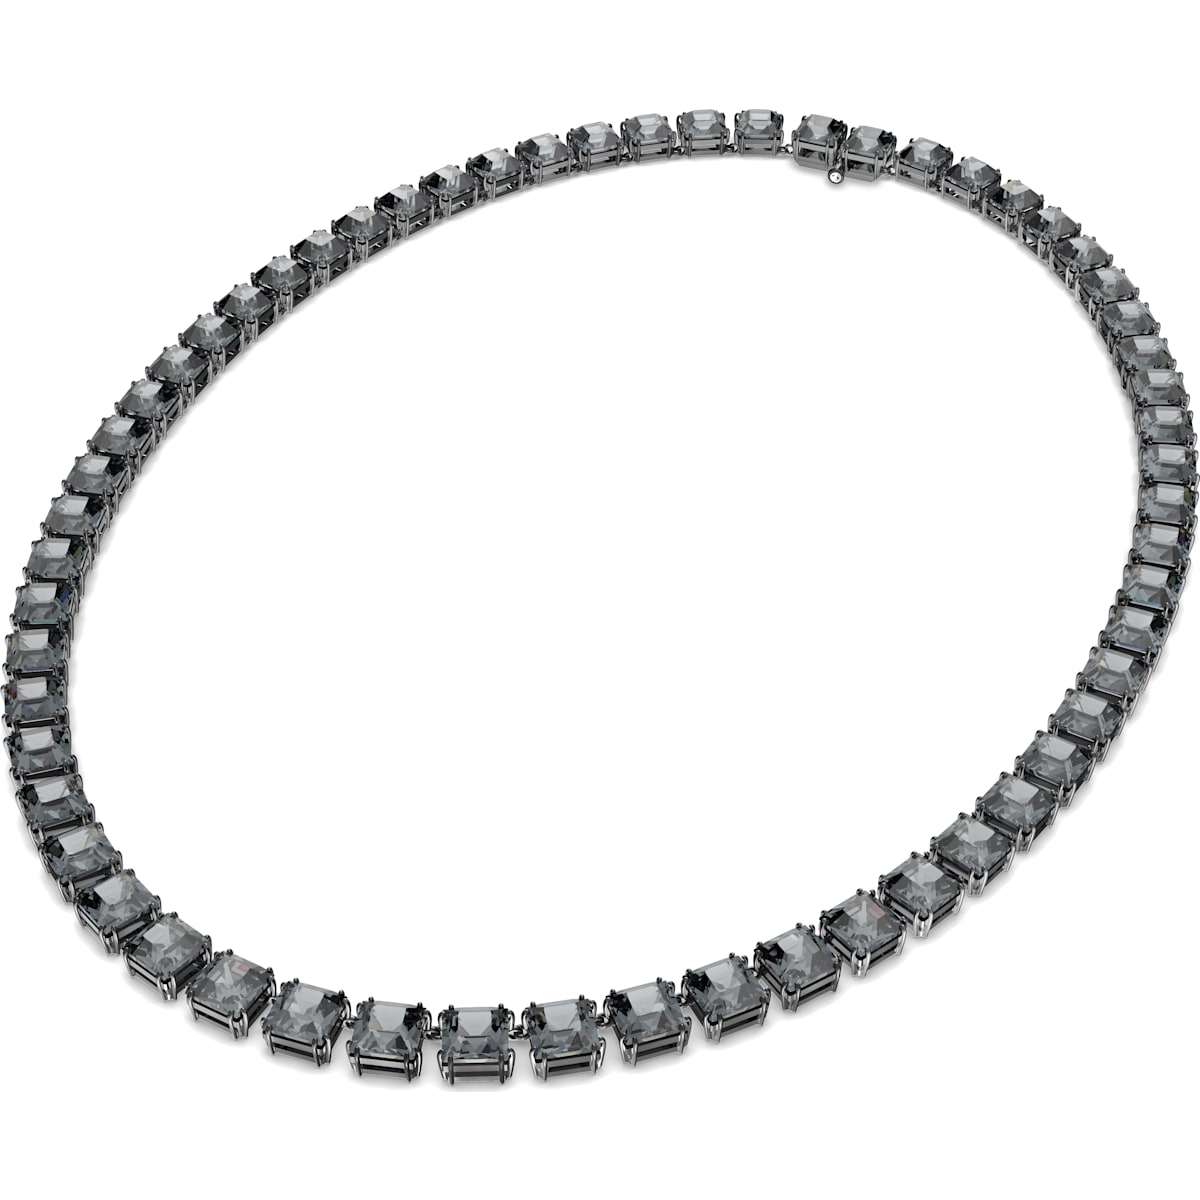 Swarovski - Millenia Halskette, Kristalle im Quadrat-Schliff, Grau, Rhodiniert - CRYSTAL UNTERBERGER